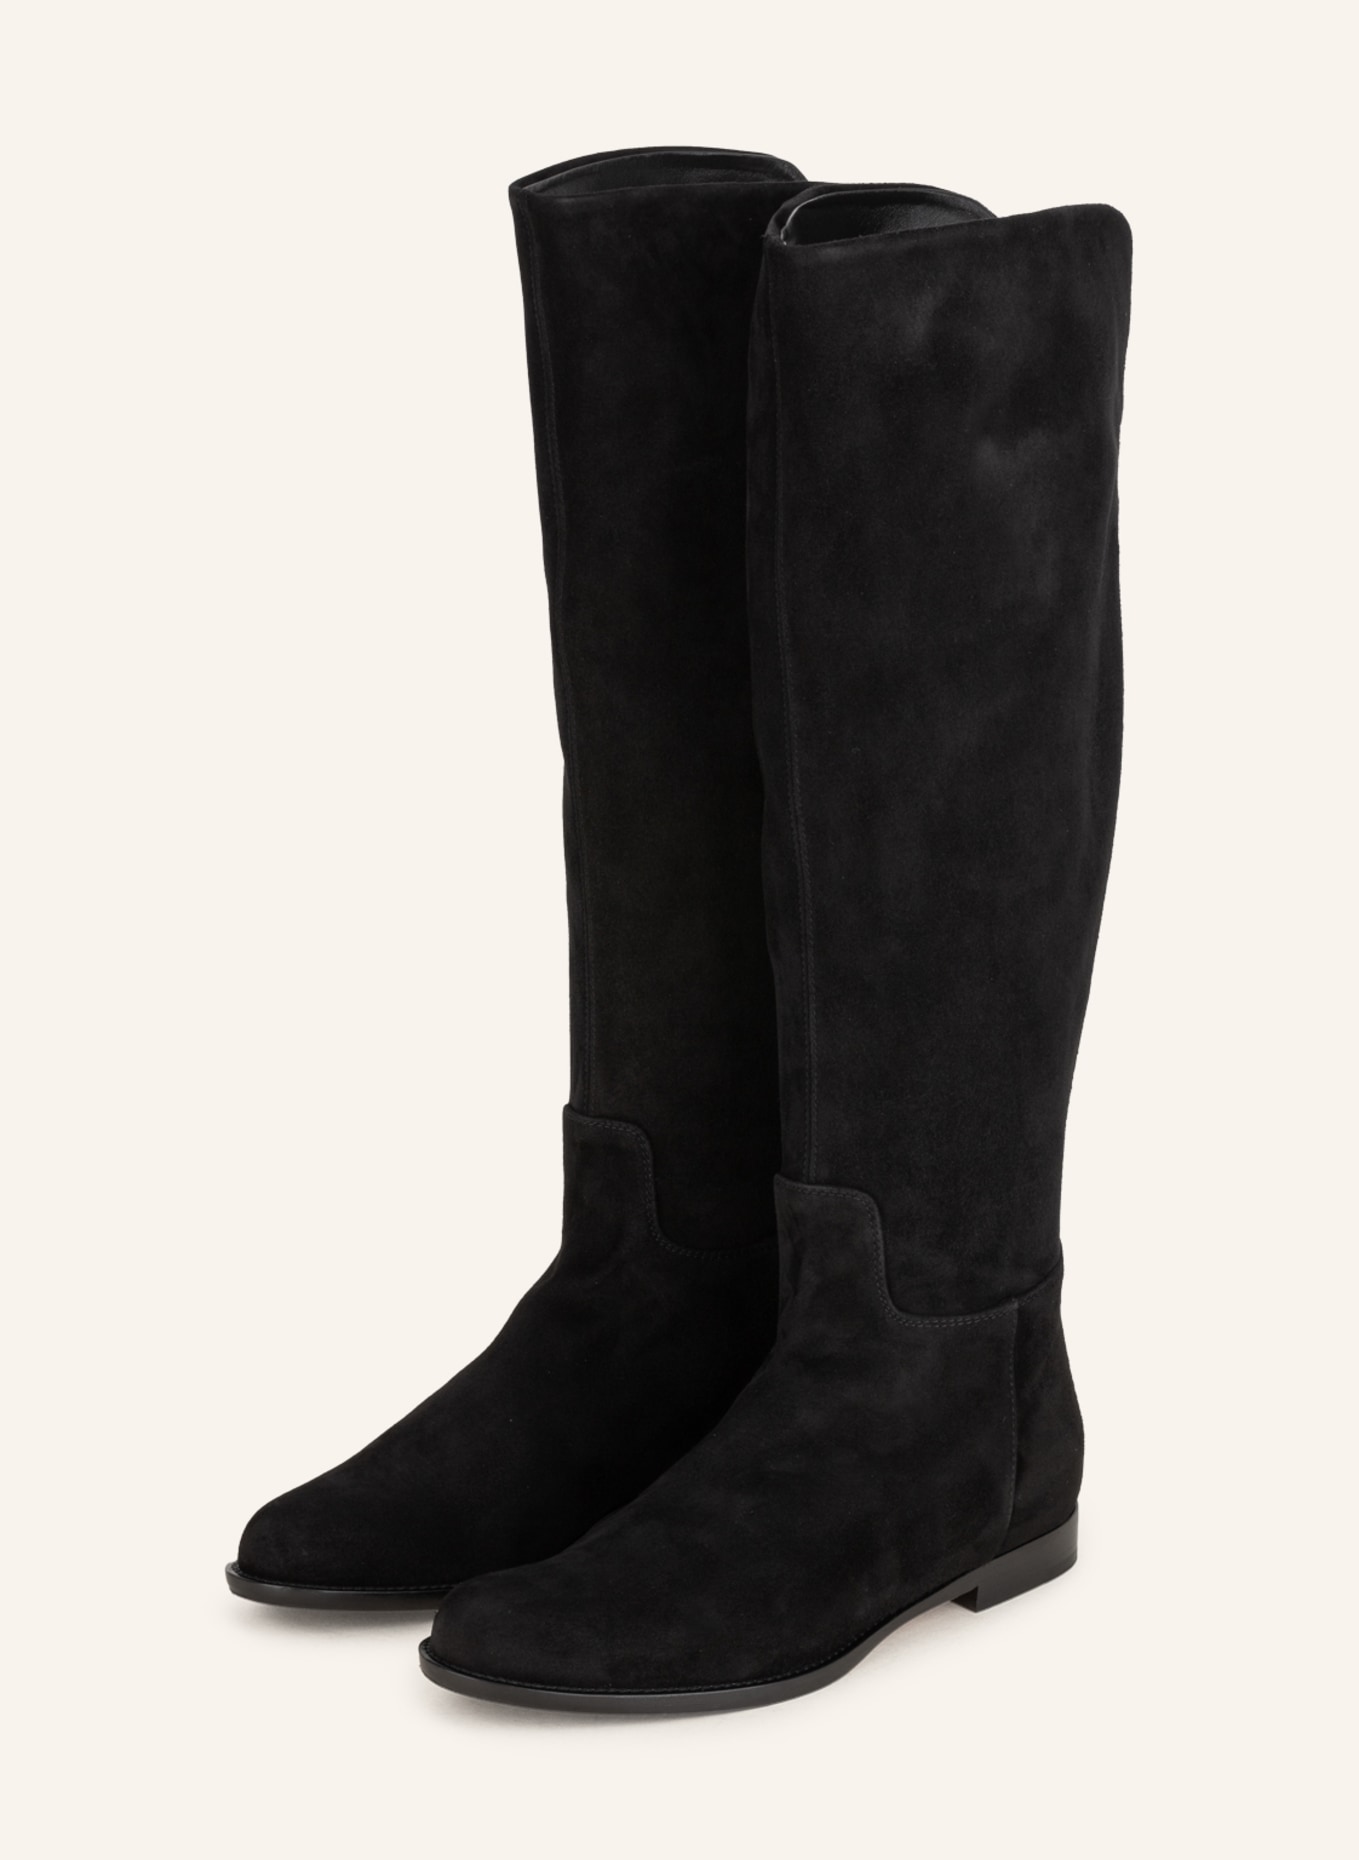 UNÜTZER Boots, Color: BLACK (Image 1)